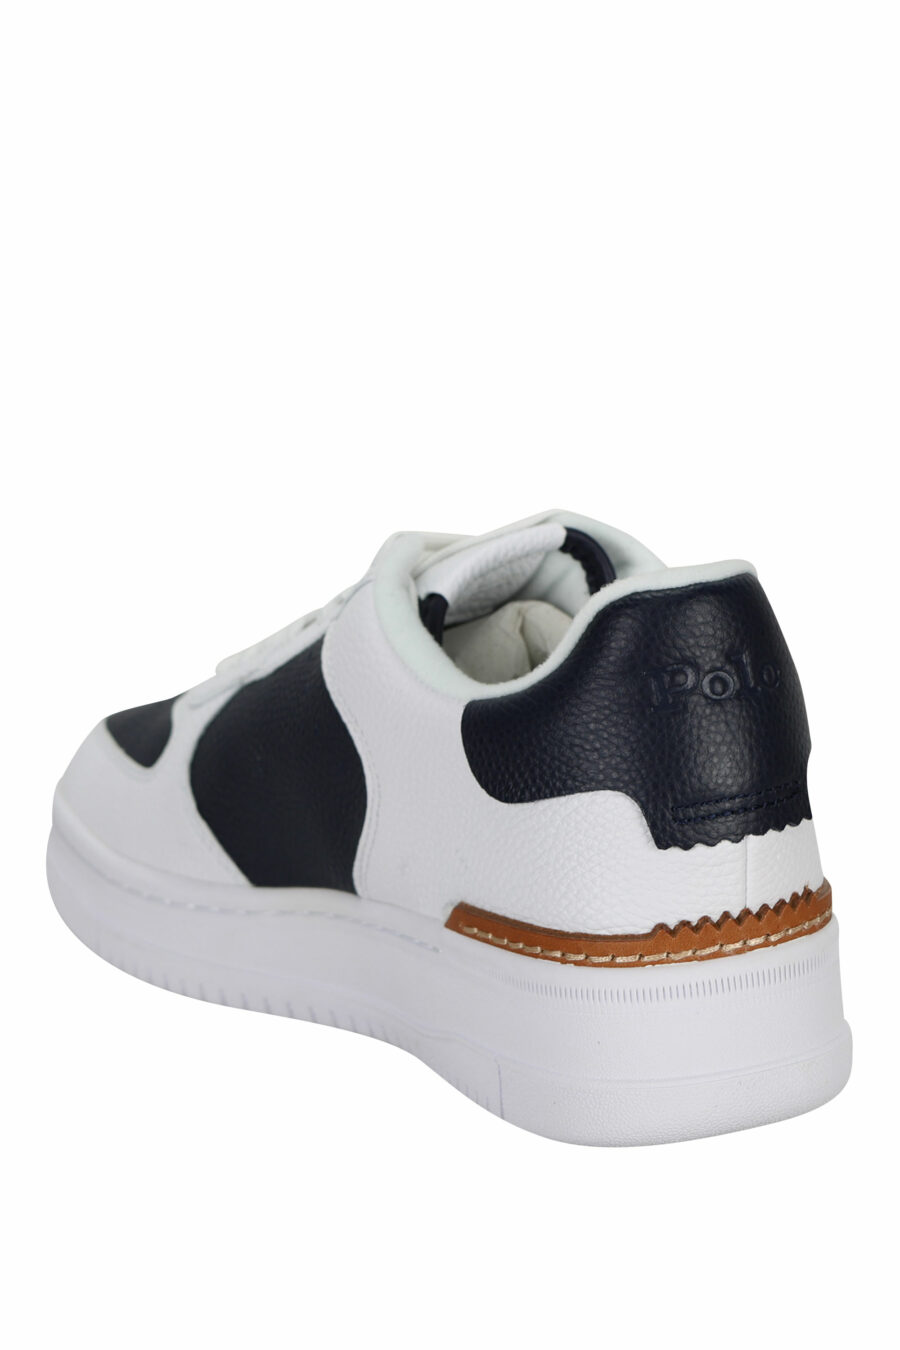 Zapatillas blancas con azul oscuro y minilogo blanco "polo" - 361653535530096 3